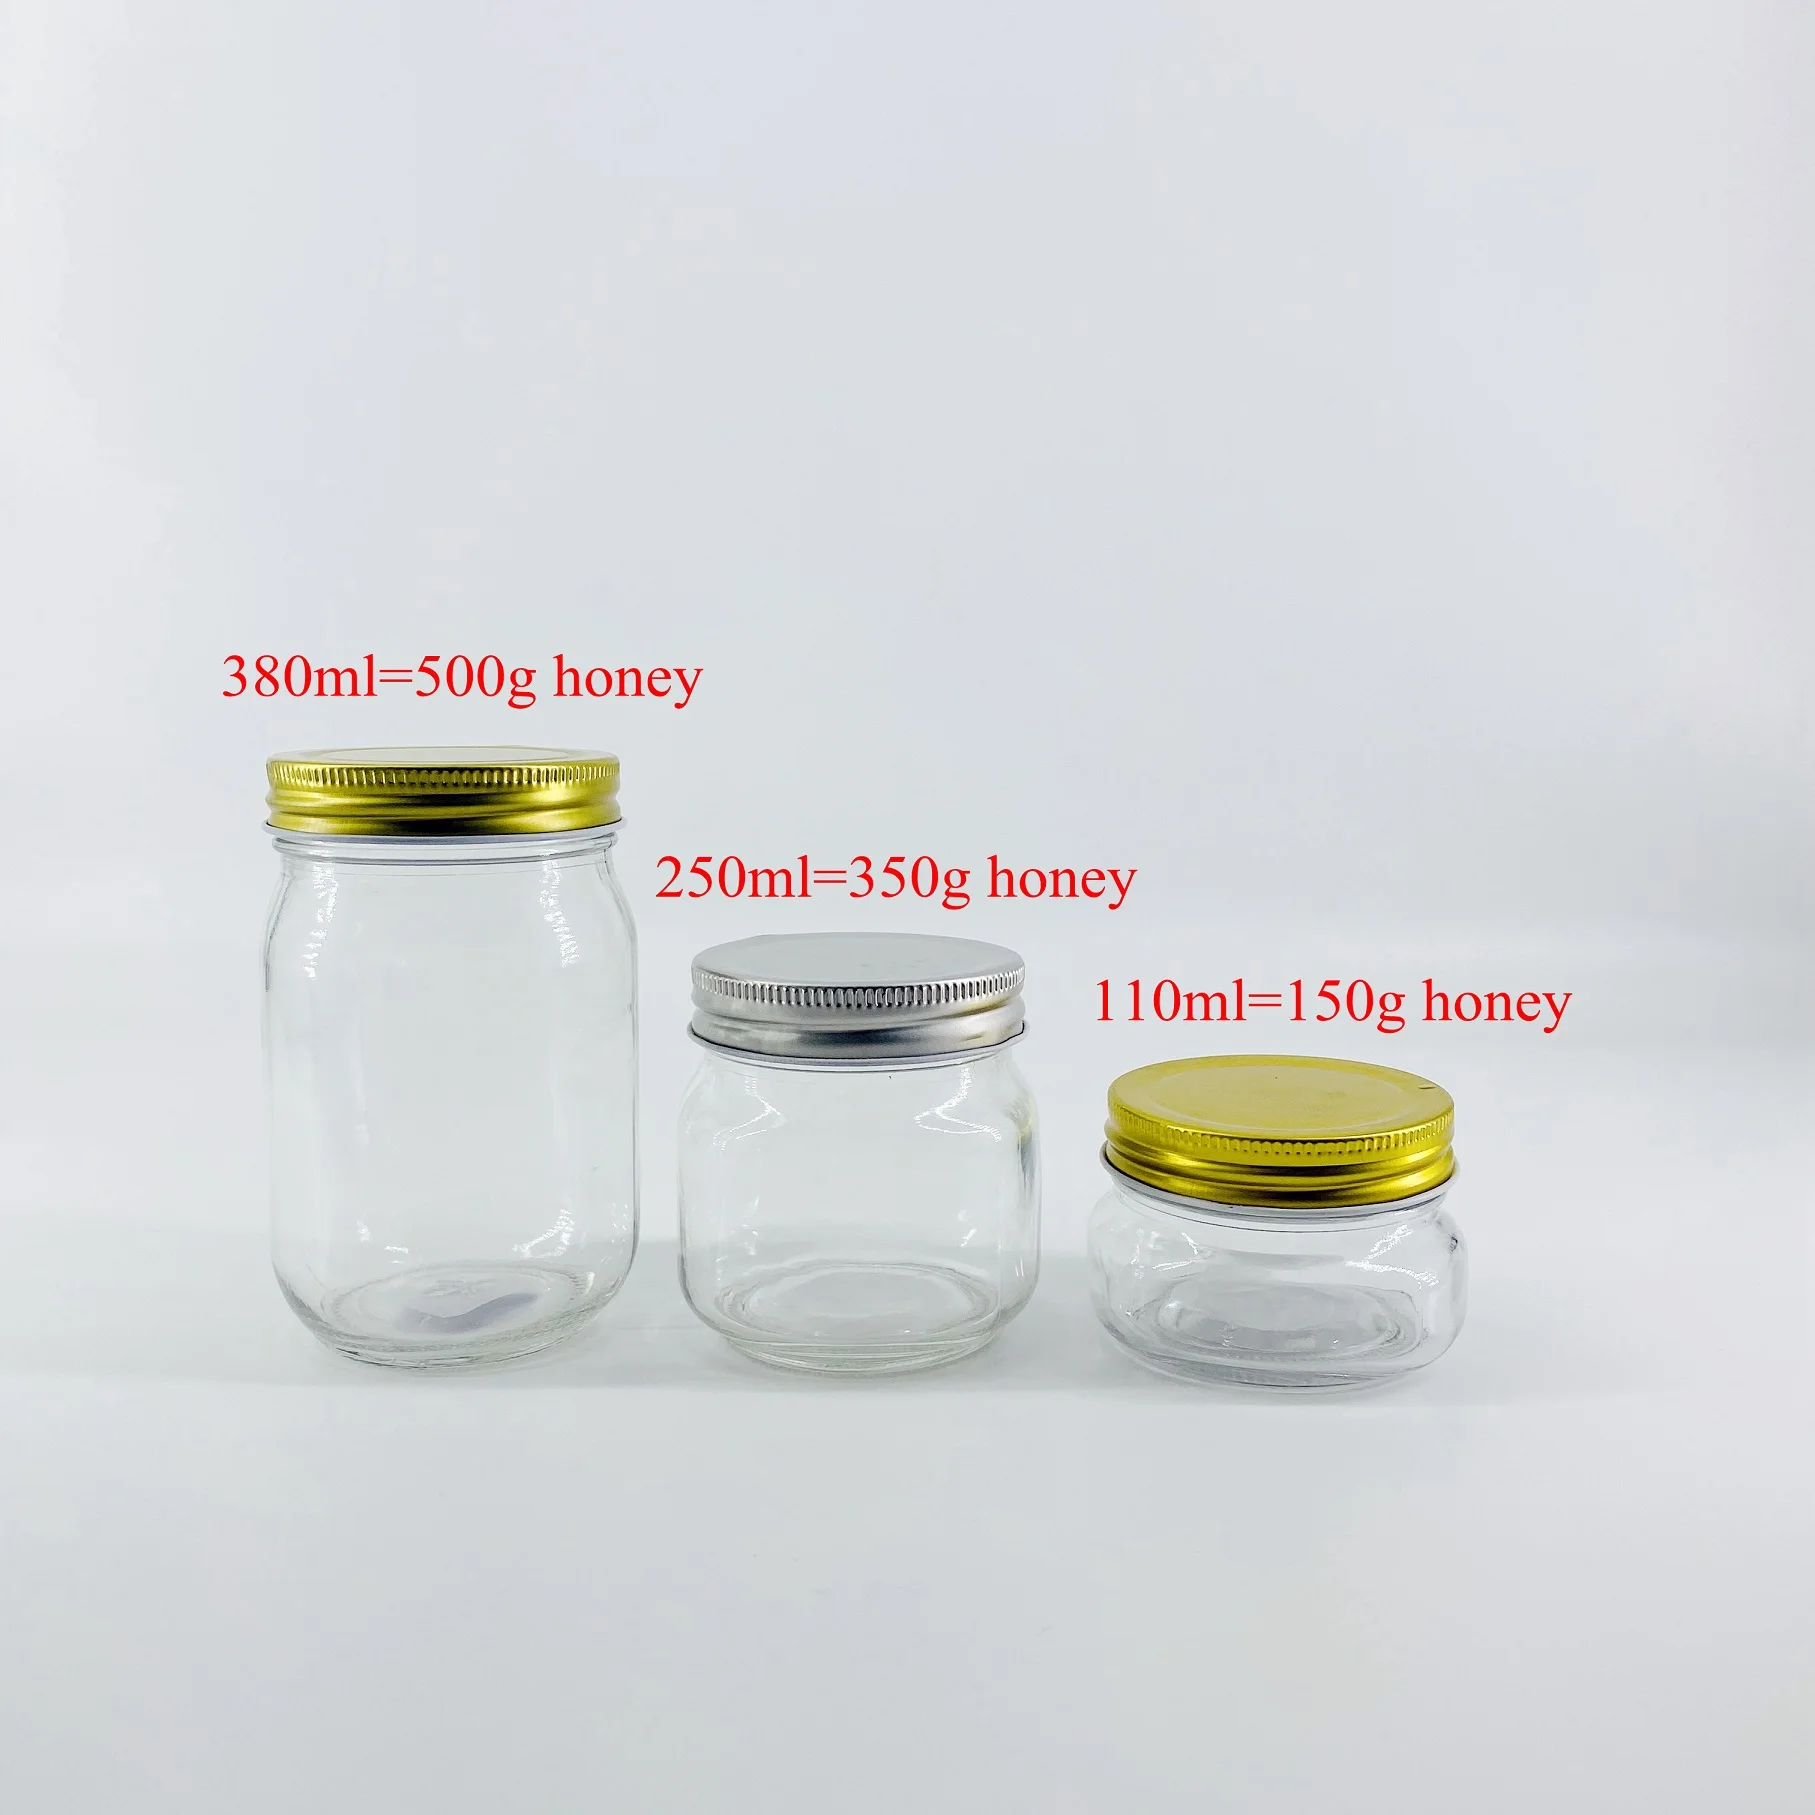 
4oz 8oz 12oz 16oz 32oz width mouth glass jelly jar Hermetic jam mason jar with lids and bands 